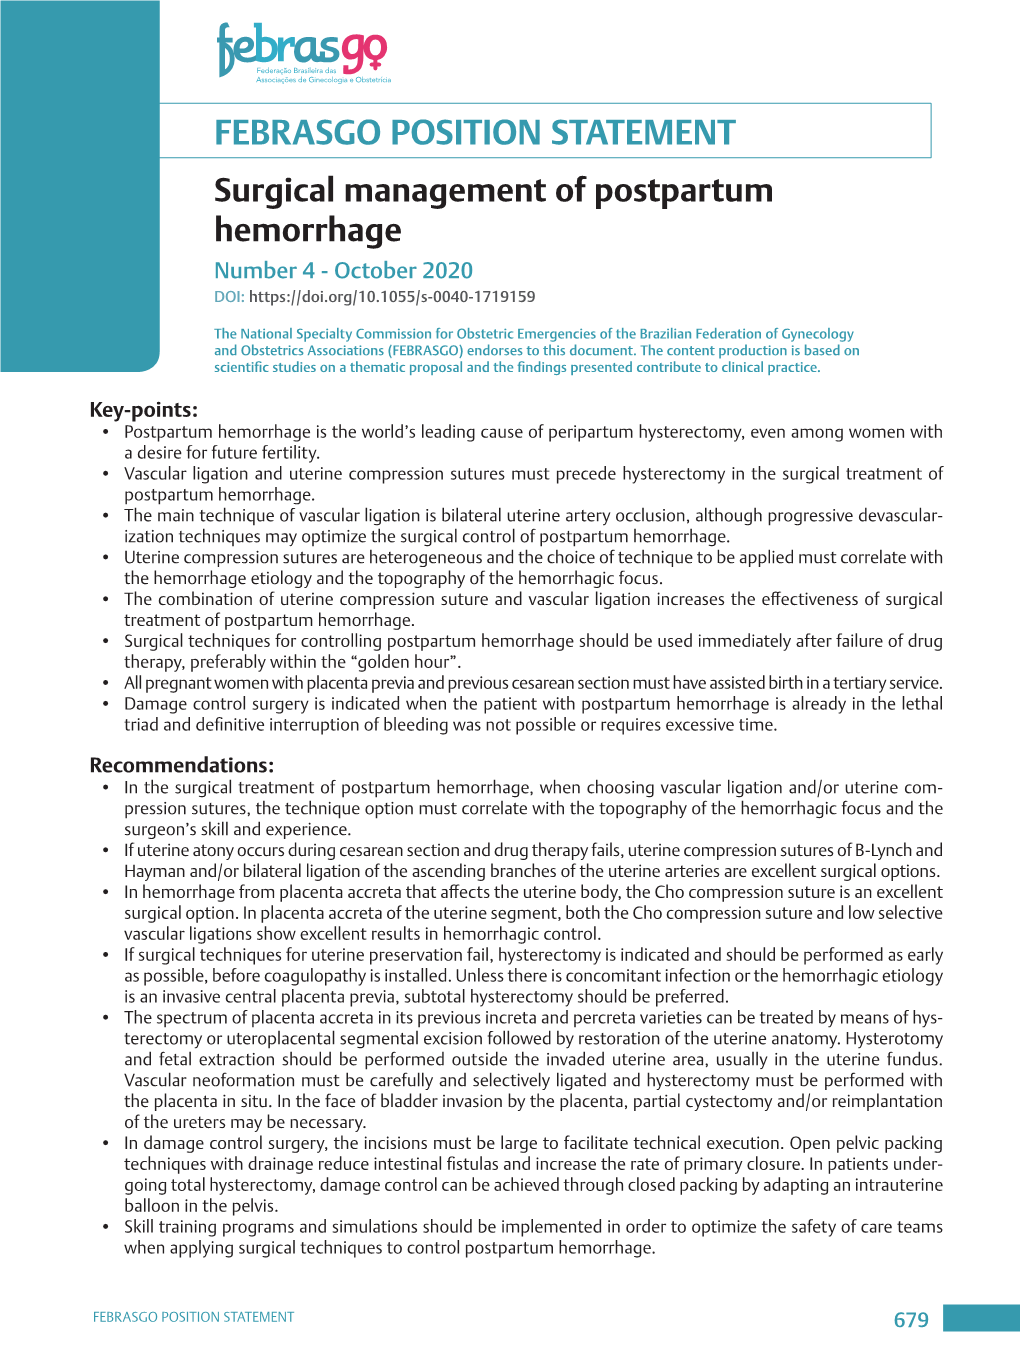 FEBRASGO POSITION STATEMENT Surgical Management of Postpartum Hemorrhage Number 4 - October 2020 DOI